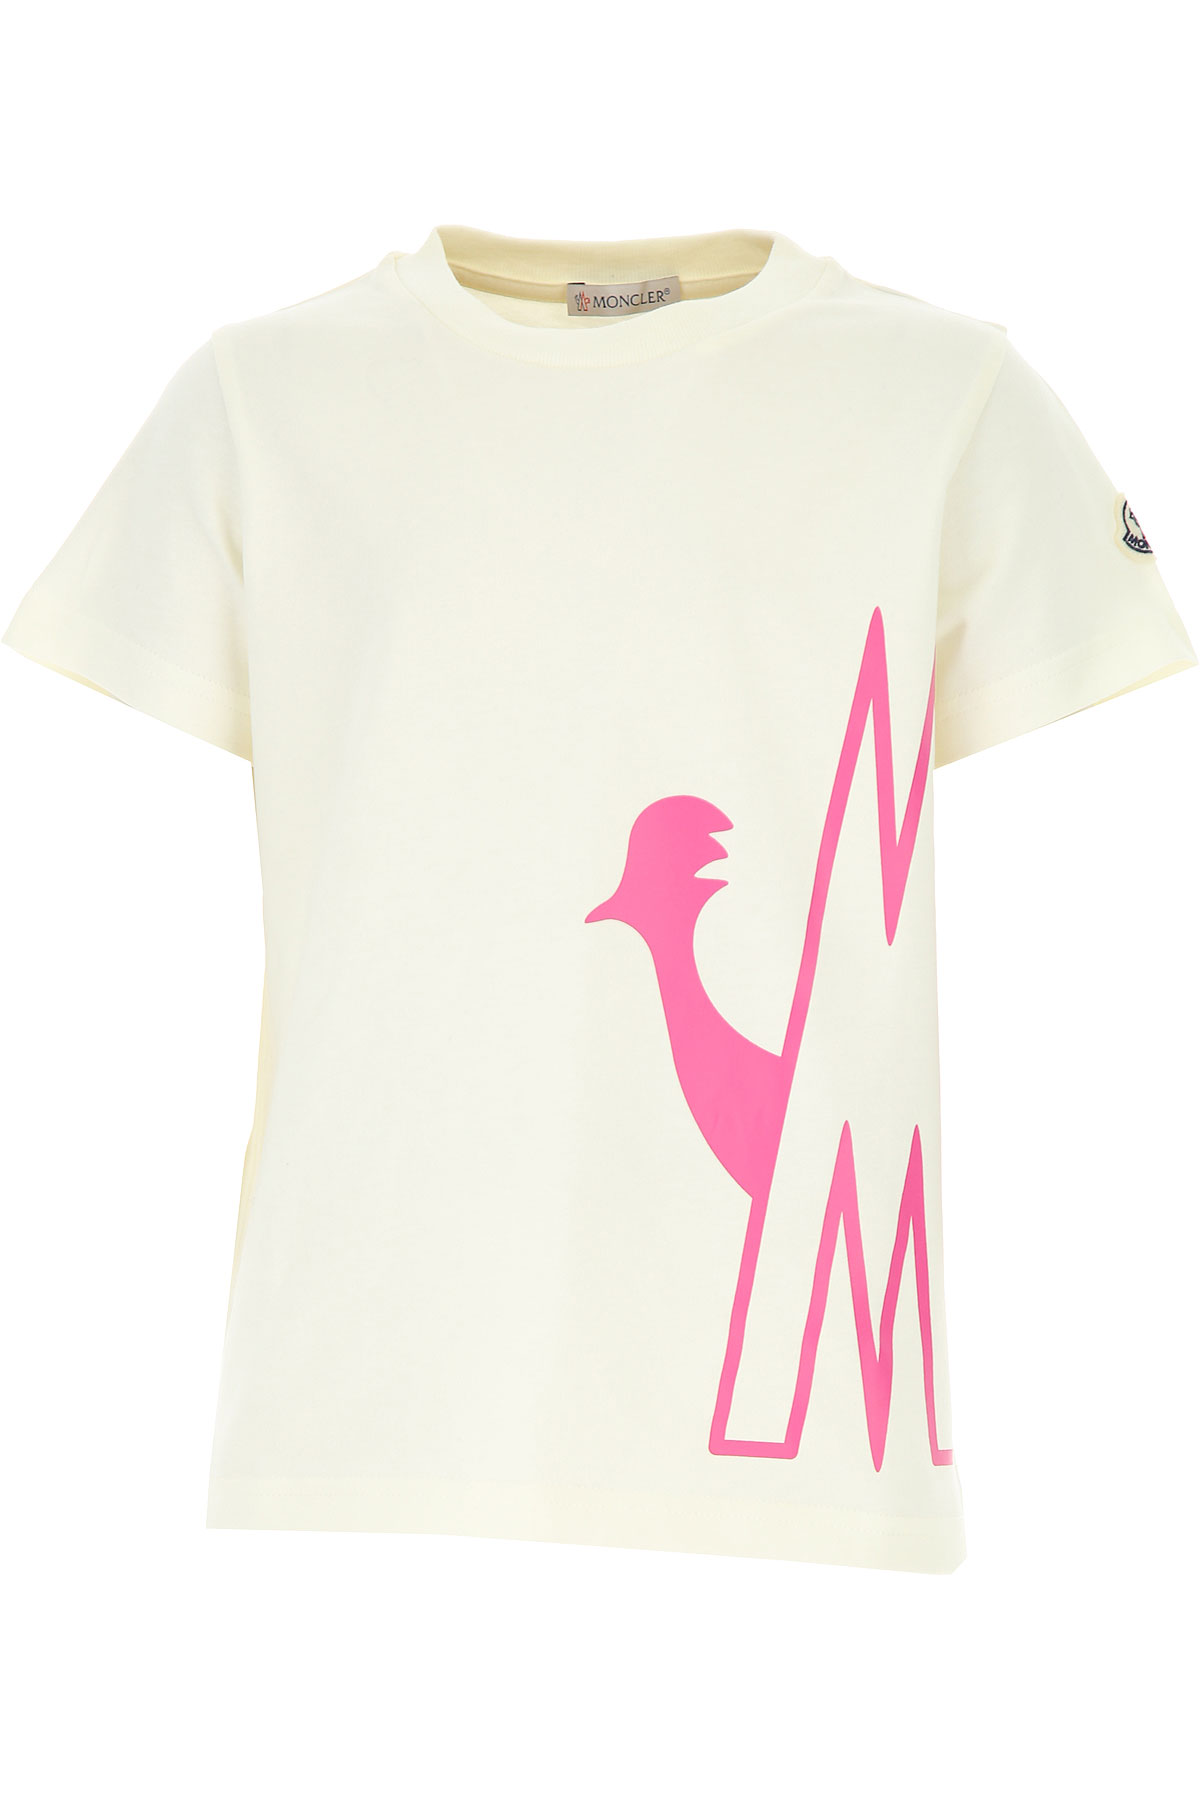 Moncler Kinder T-Shirt für Mädchen Günstig im Sale, Weiss, Baumwolle, 2017, 10Y 8Y